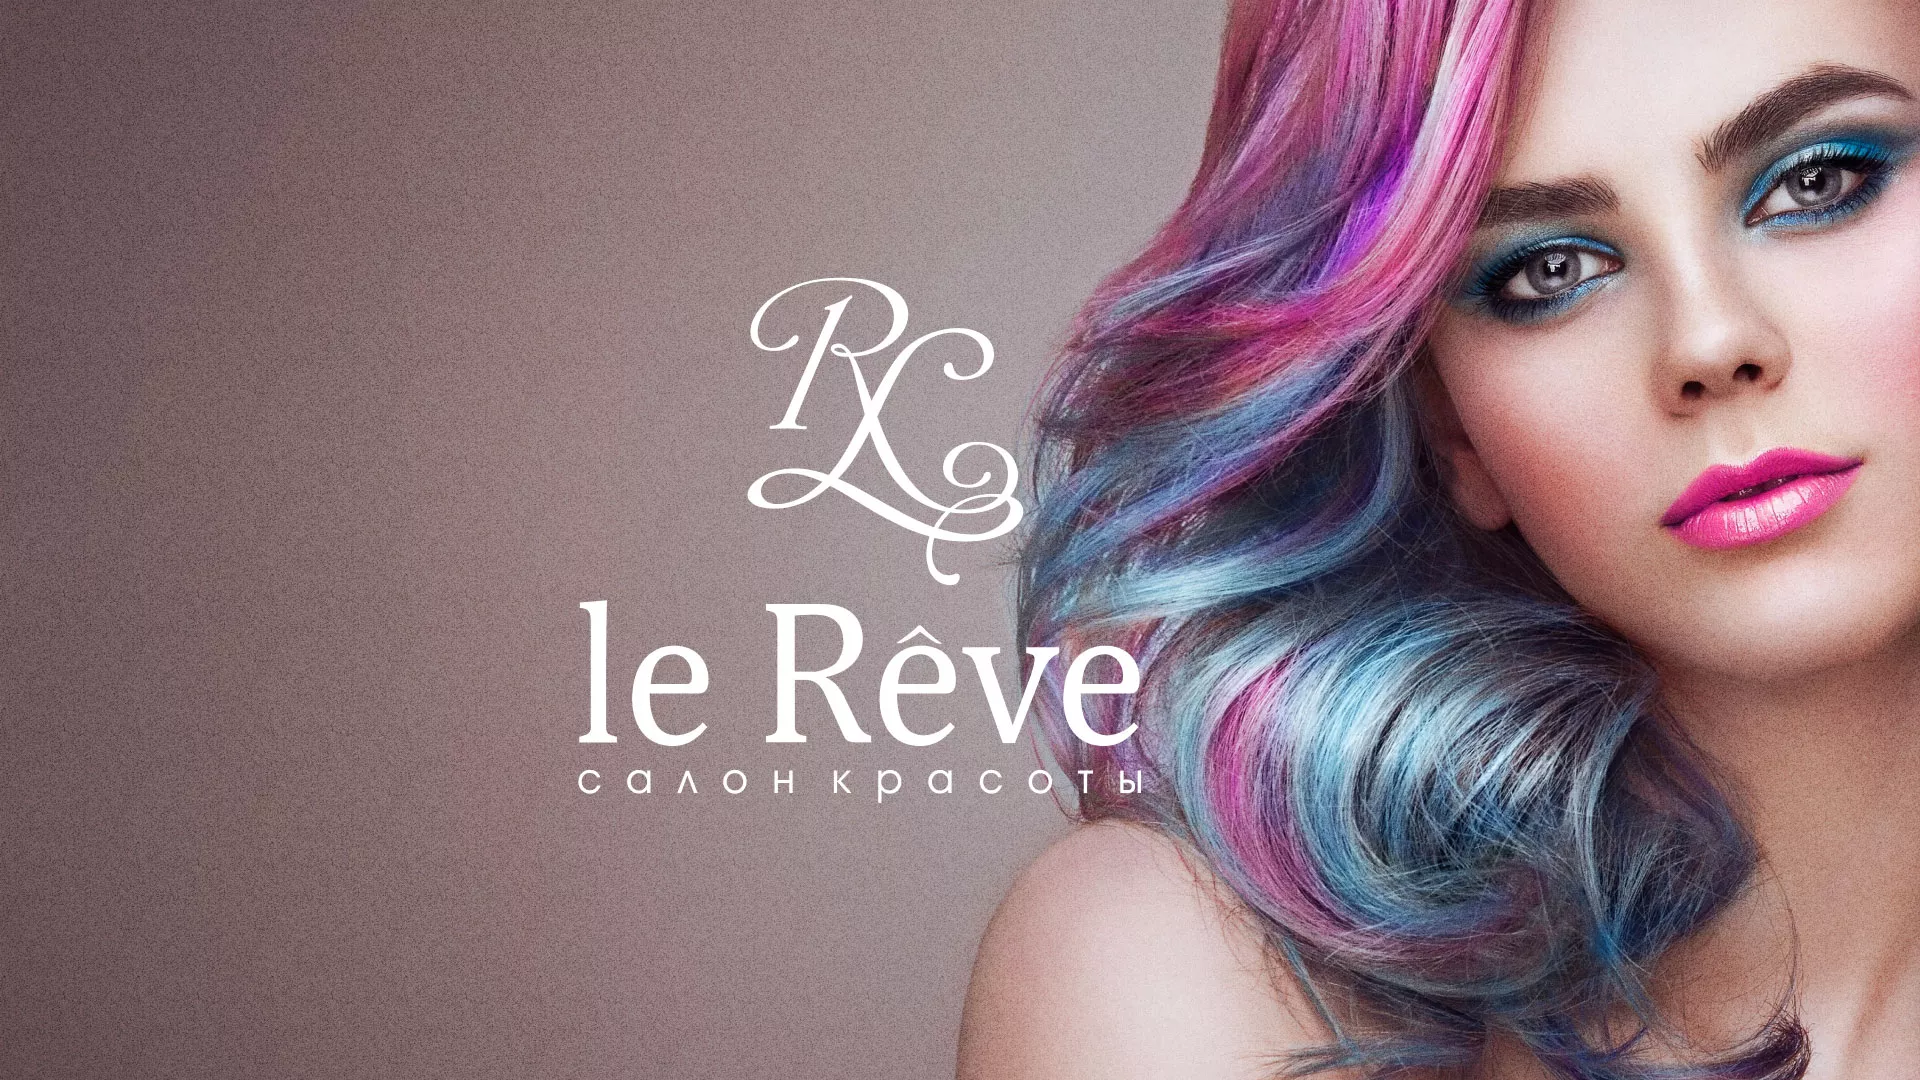 Создание сайта для салона красоты «Le Reve» в Ханты-Мансийске